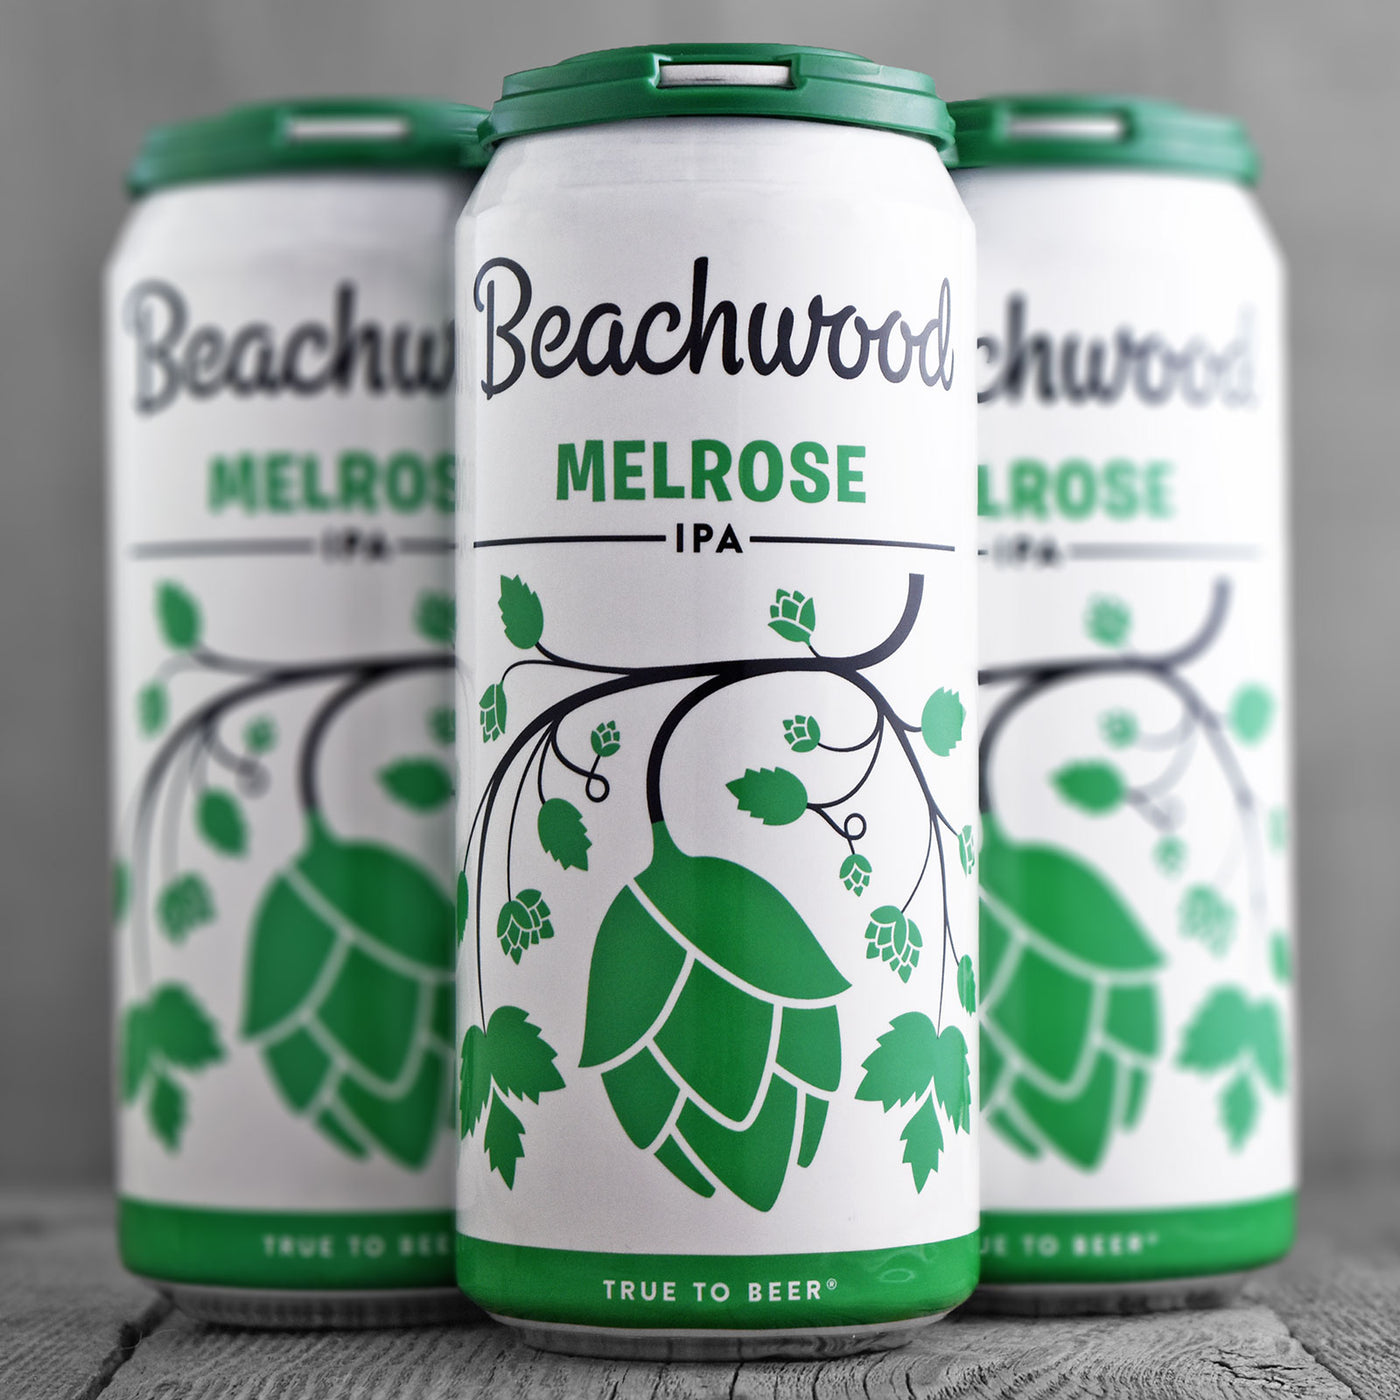 Beachwood Melrose IPA